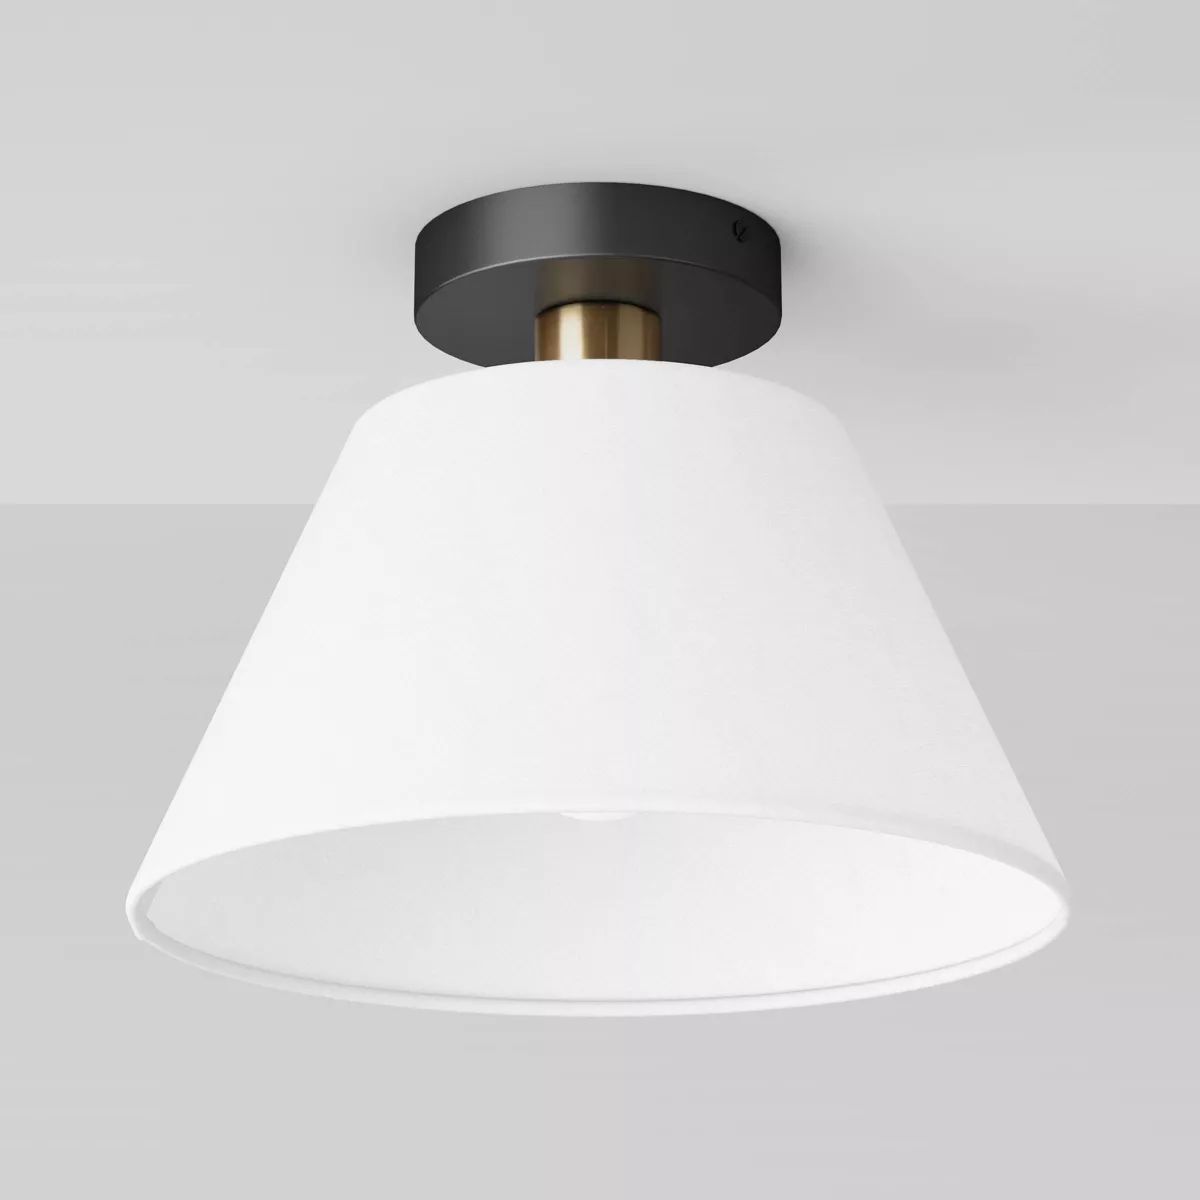 Tapered Flush Mount Ceiling Light Black/Brass - Threshold™ | Target